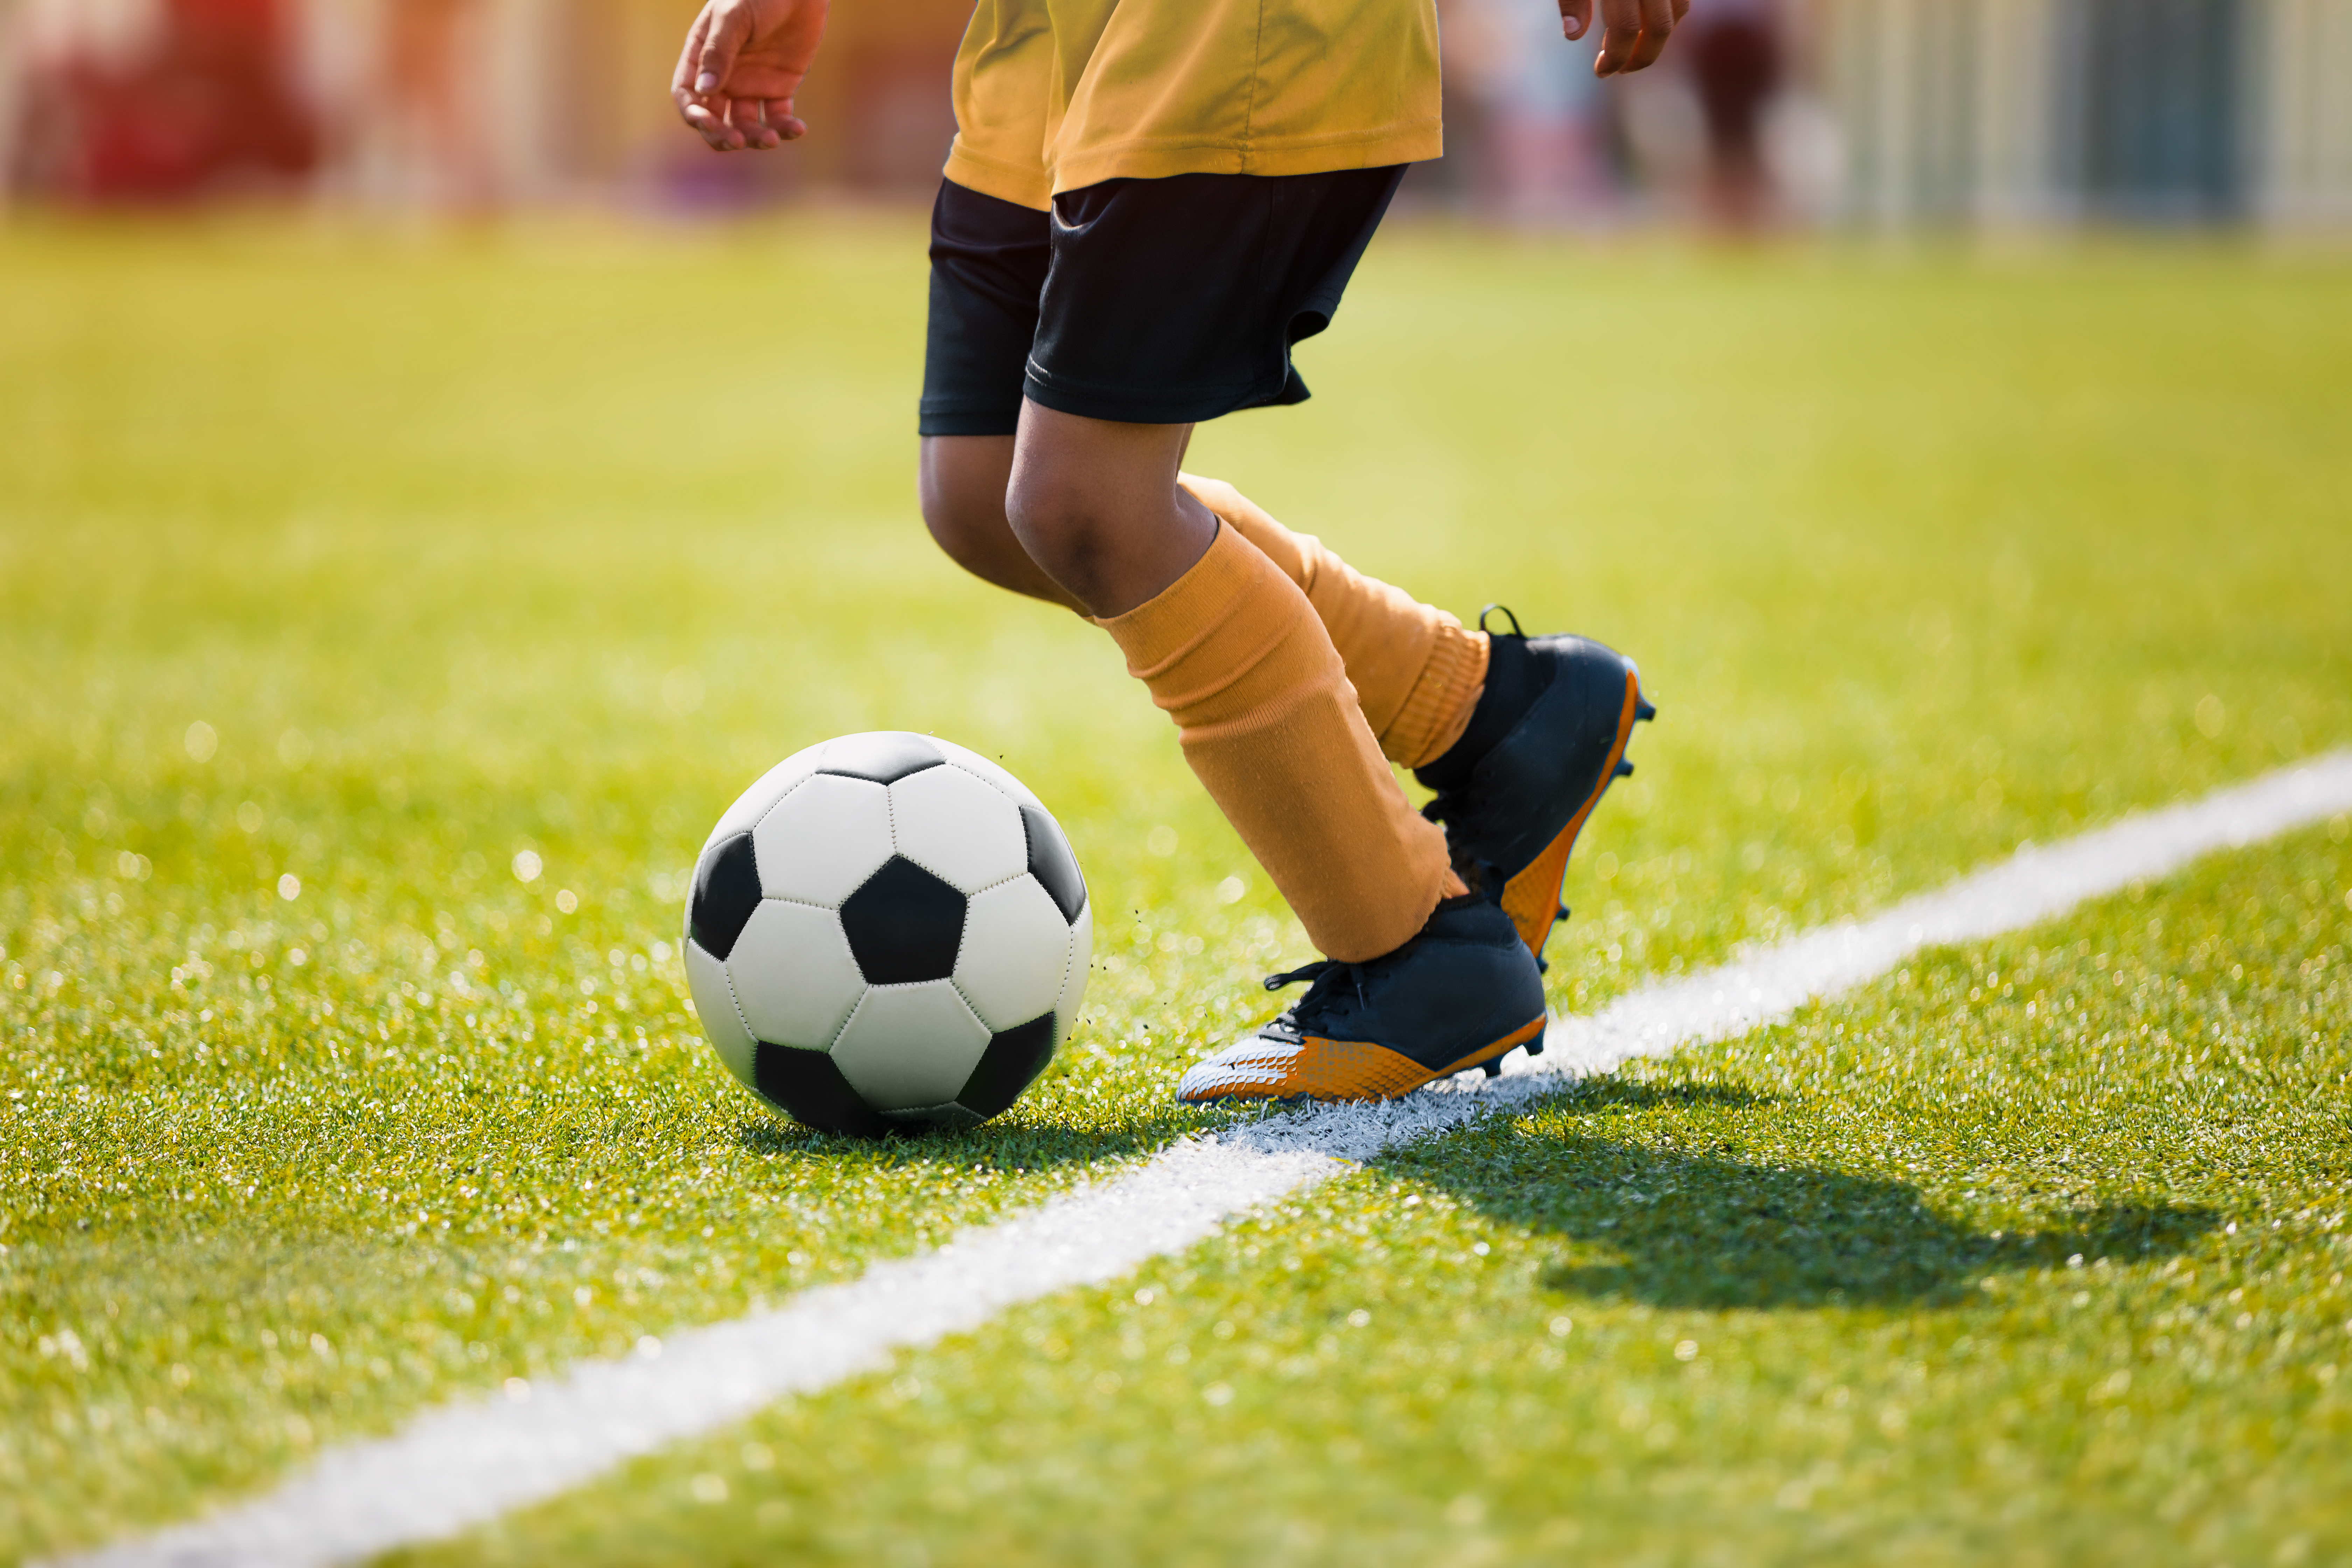 Un jeune enfant jouant au football sur un terrain | Source : Shutterstock